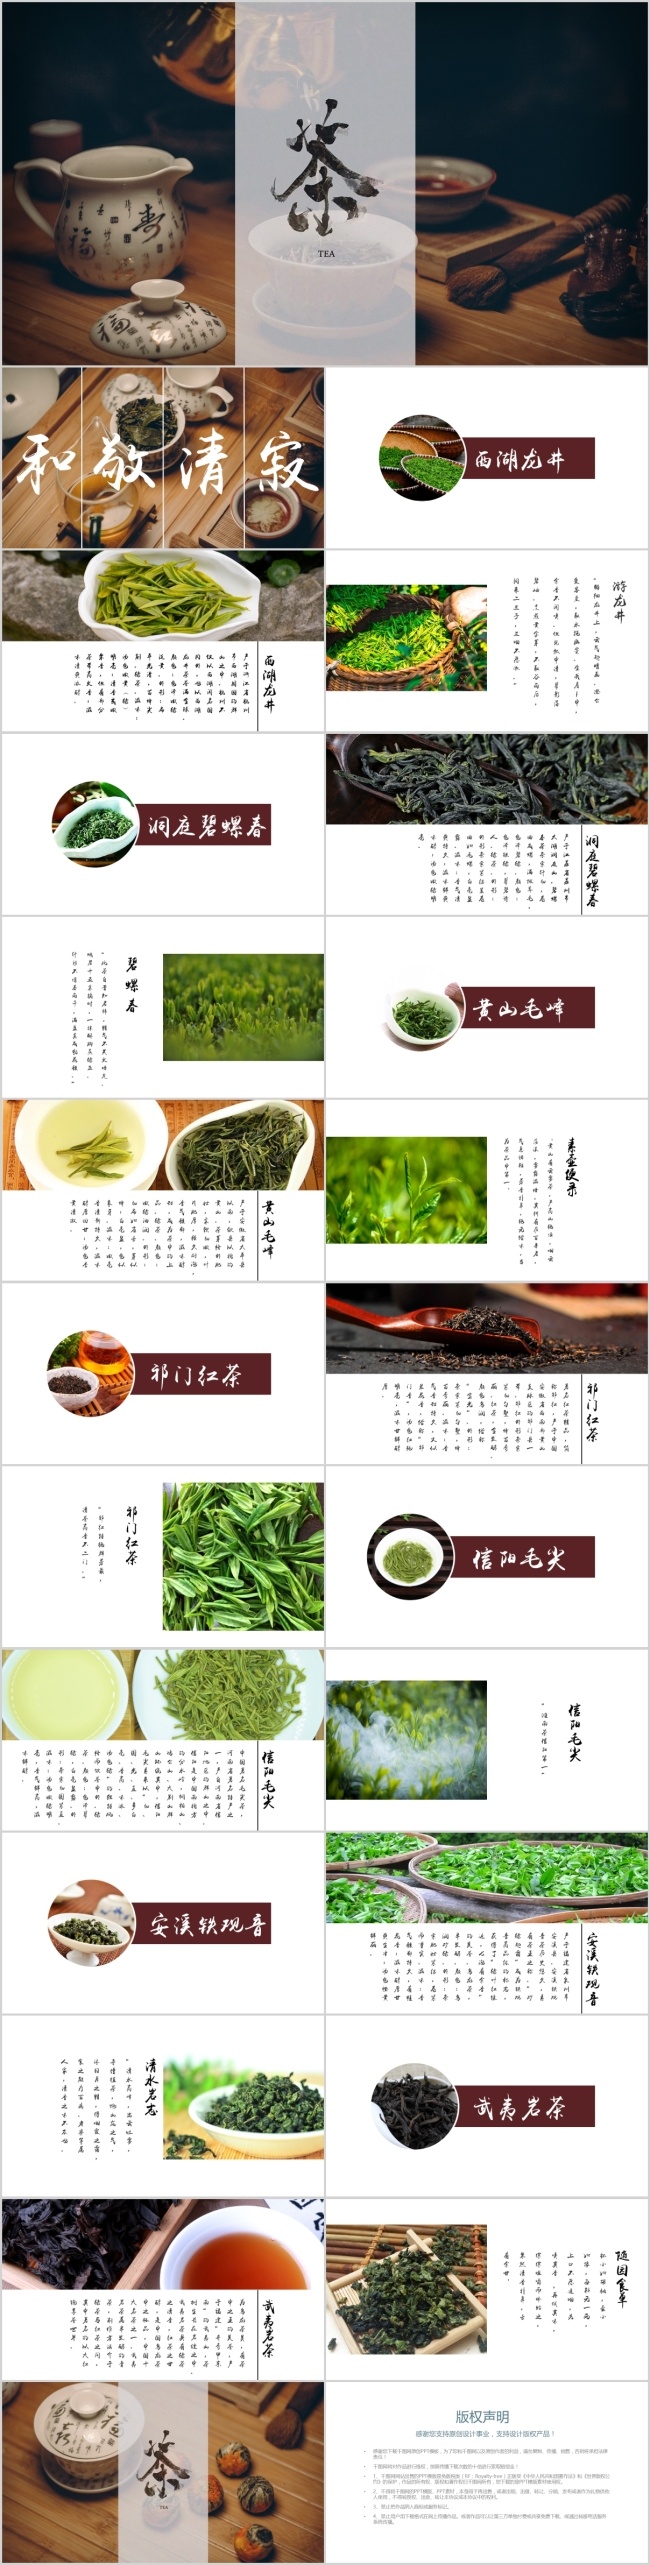 绿色 棕色 简约 茶文化 茶 品种 介绍 模板 茶道 茶叶 文艺 茶艺